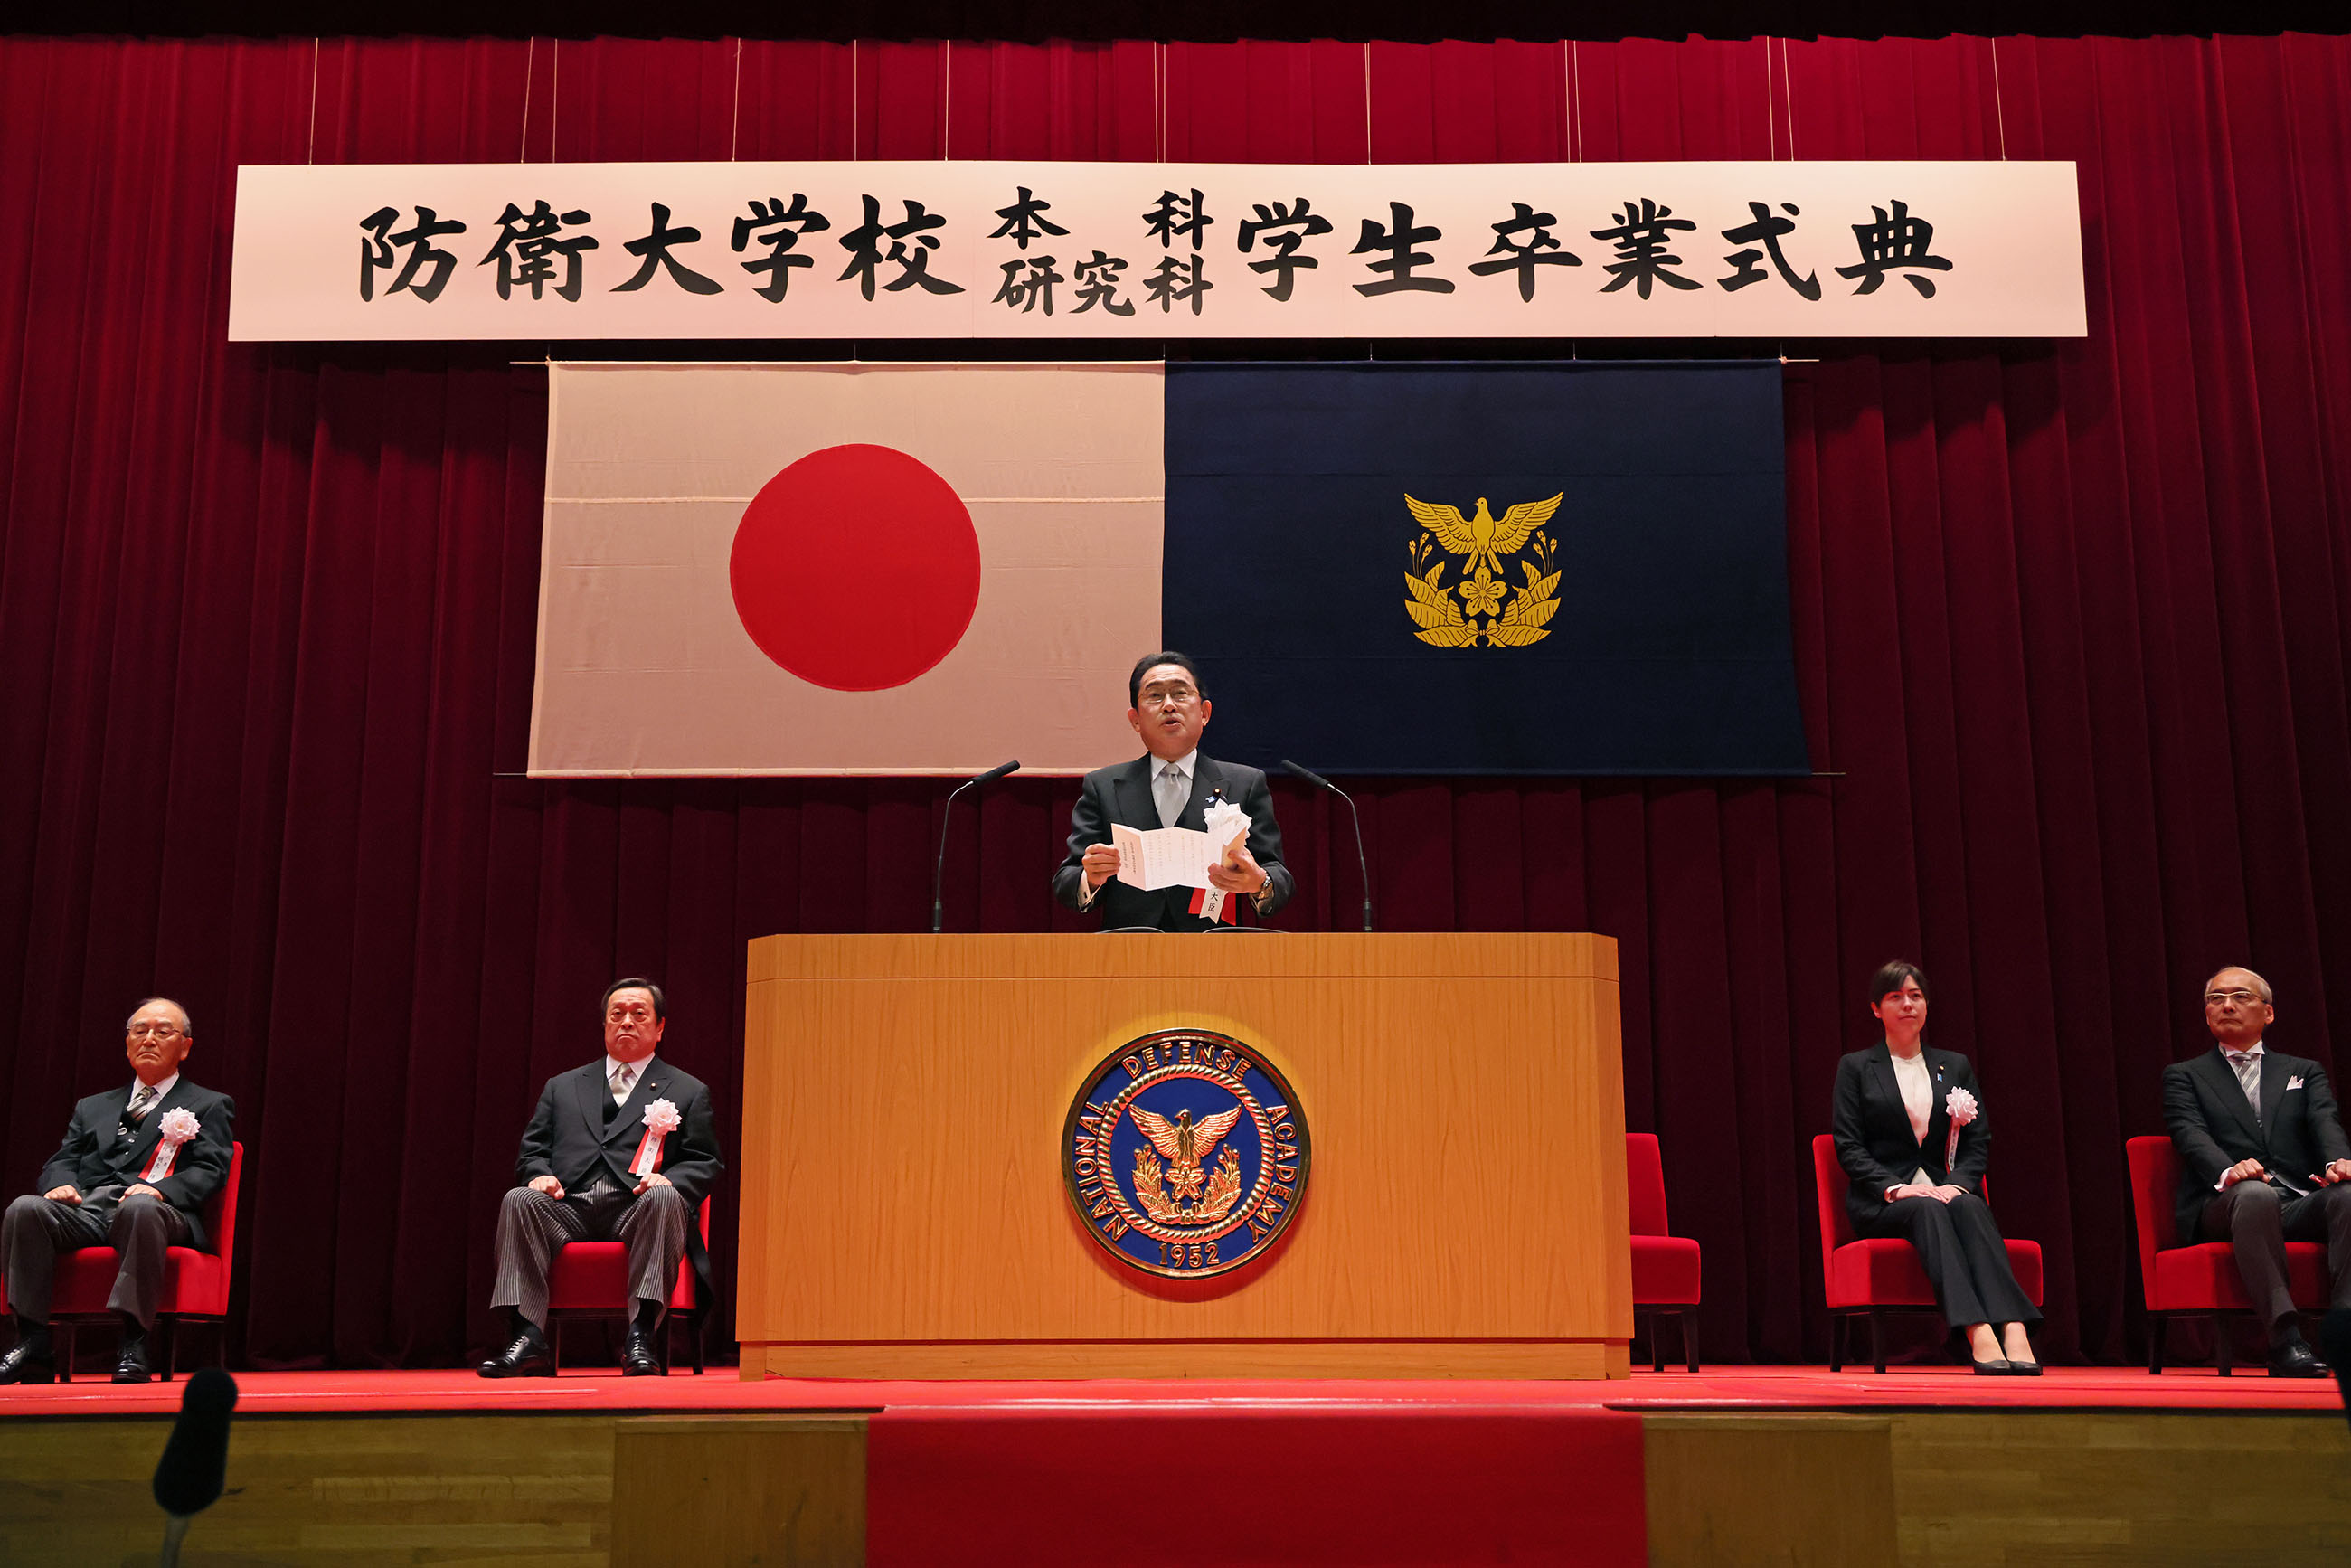 Prime Minister Kishida delivering a commencement address (1)